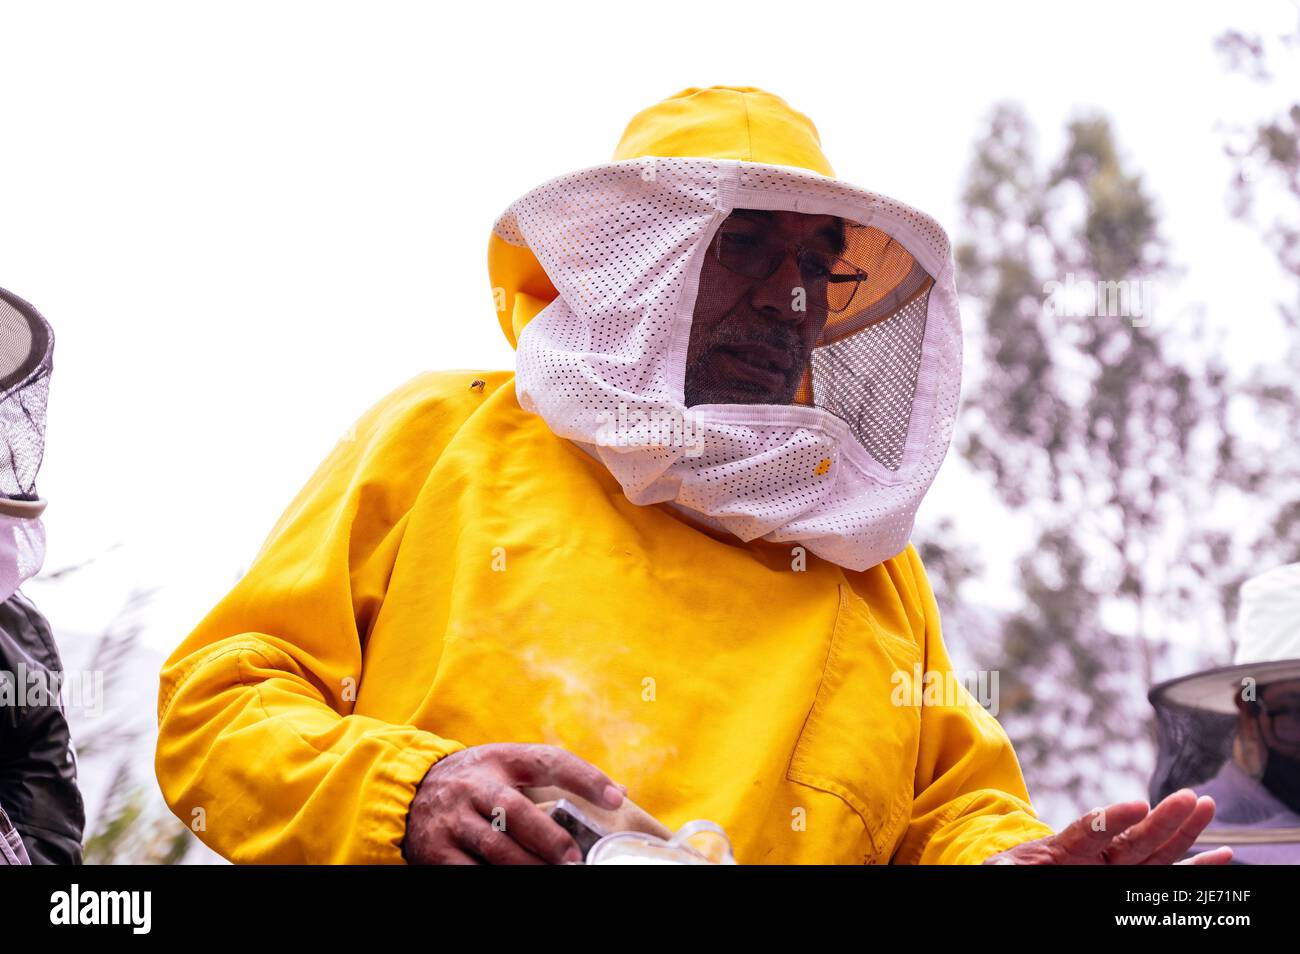 Un apiculteur dans une combinaison de protection travaille avec les abeilles. Un apiculteur inspecte les ruches en bois. Apiculture. ECO apiary dans la nature. Miel naturel frais Banque D'Images